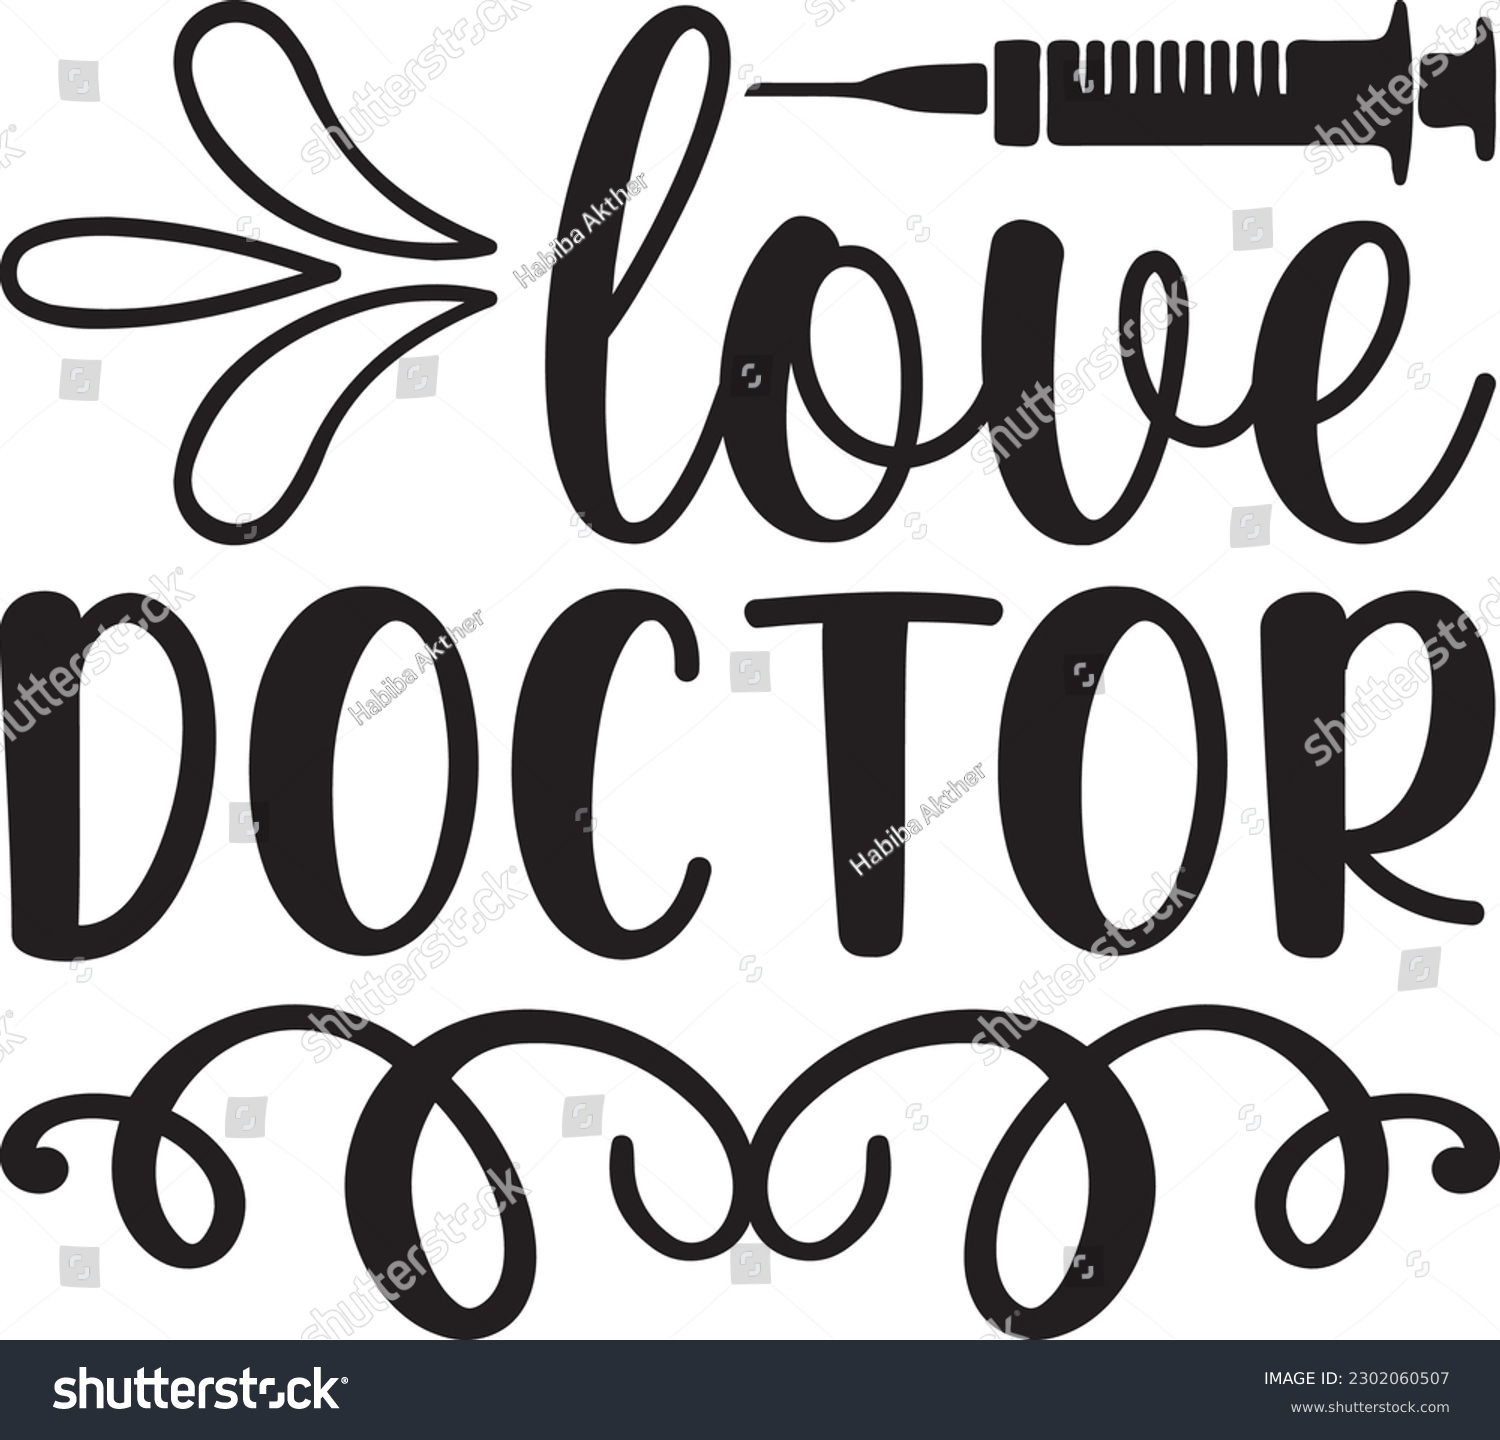 SVG of love doctor,Doctor's Day,#1 doctor,Doctor Svg,silhouette,Vector,Nurse SVG,Essential Worker,Hospital,Heart Stethoscope SVG,dentist svg,monogram svg,medical,Eps,uniform svg,Doctor Jacket svg,Doctor mug, svg